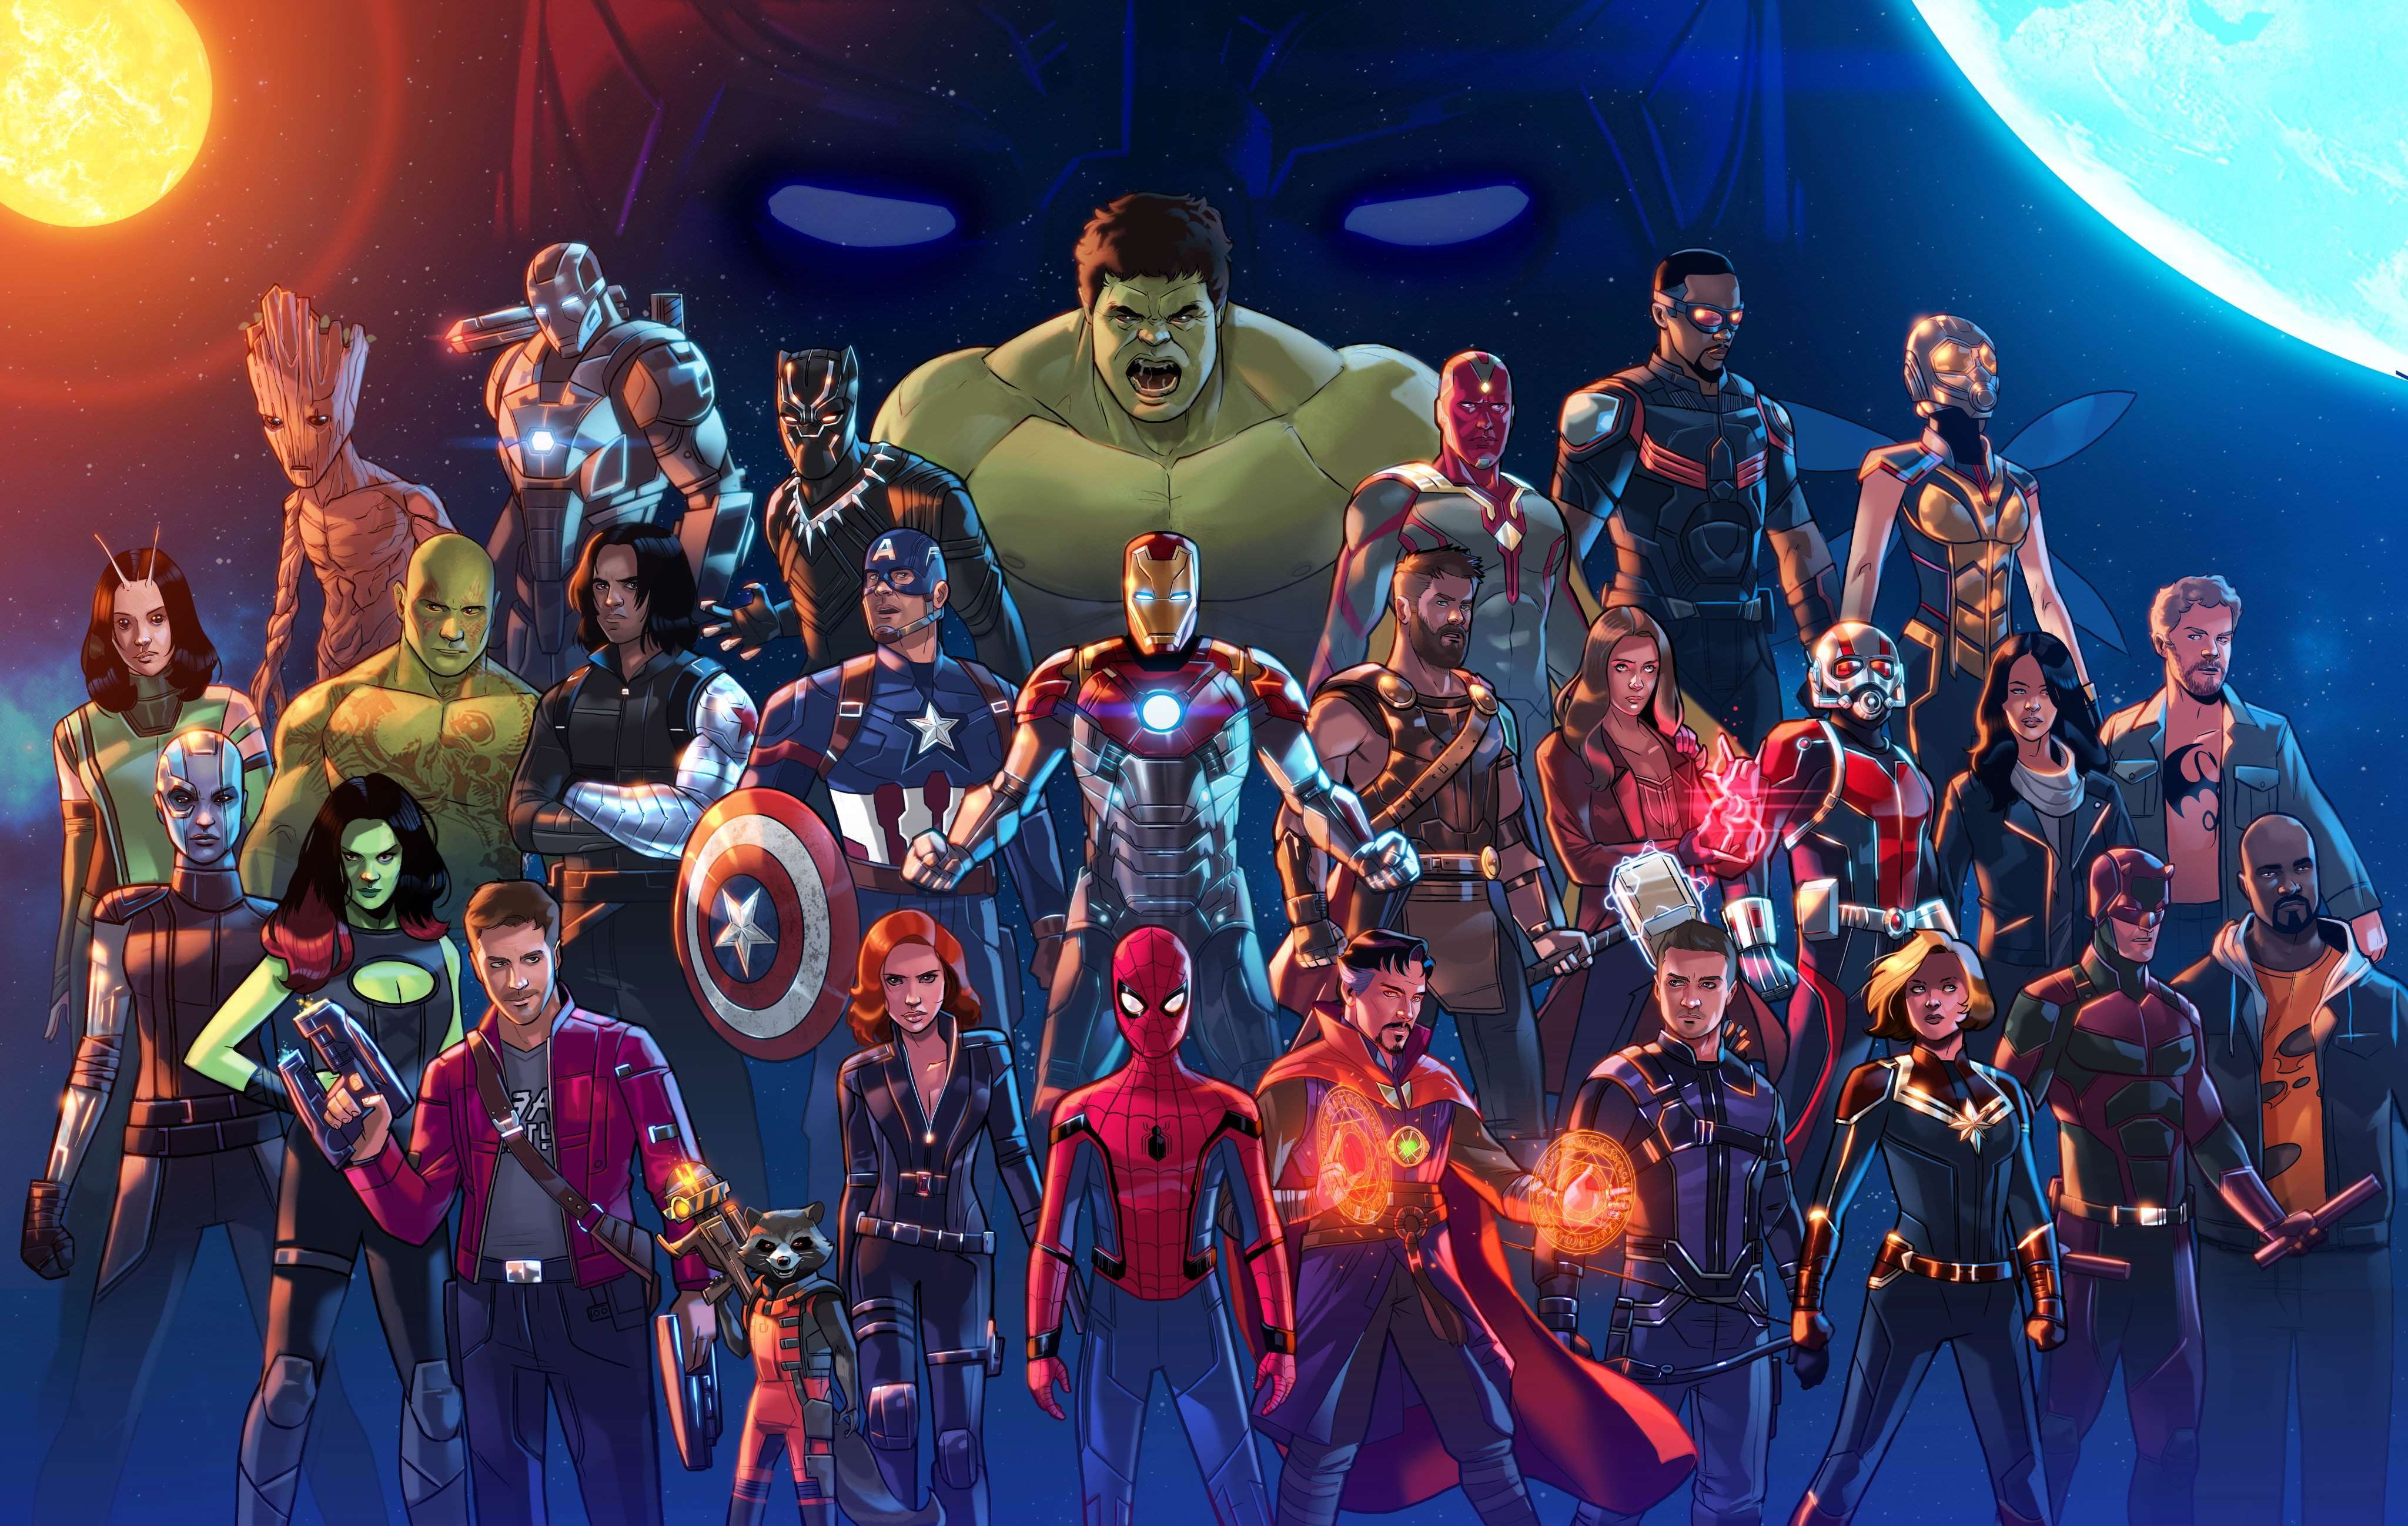 Avengers - Bộ phim siêu anh hùng huyền thoại về nhóm Avengers đã chinh phục hàng triệu người hâm mộ trên khắp thế giới, không chỉ với những nội dung hấp dẫn, kịch tính mà còn những hình ảnh vô cùng đẹp mắt và quyền lực. Cùng thưởng thức bộ ảnh đầy ấn tượng về nhóm siêu anh hùng này để lại dấu ấn khó quên trong lòng bạn.